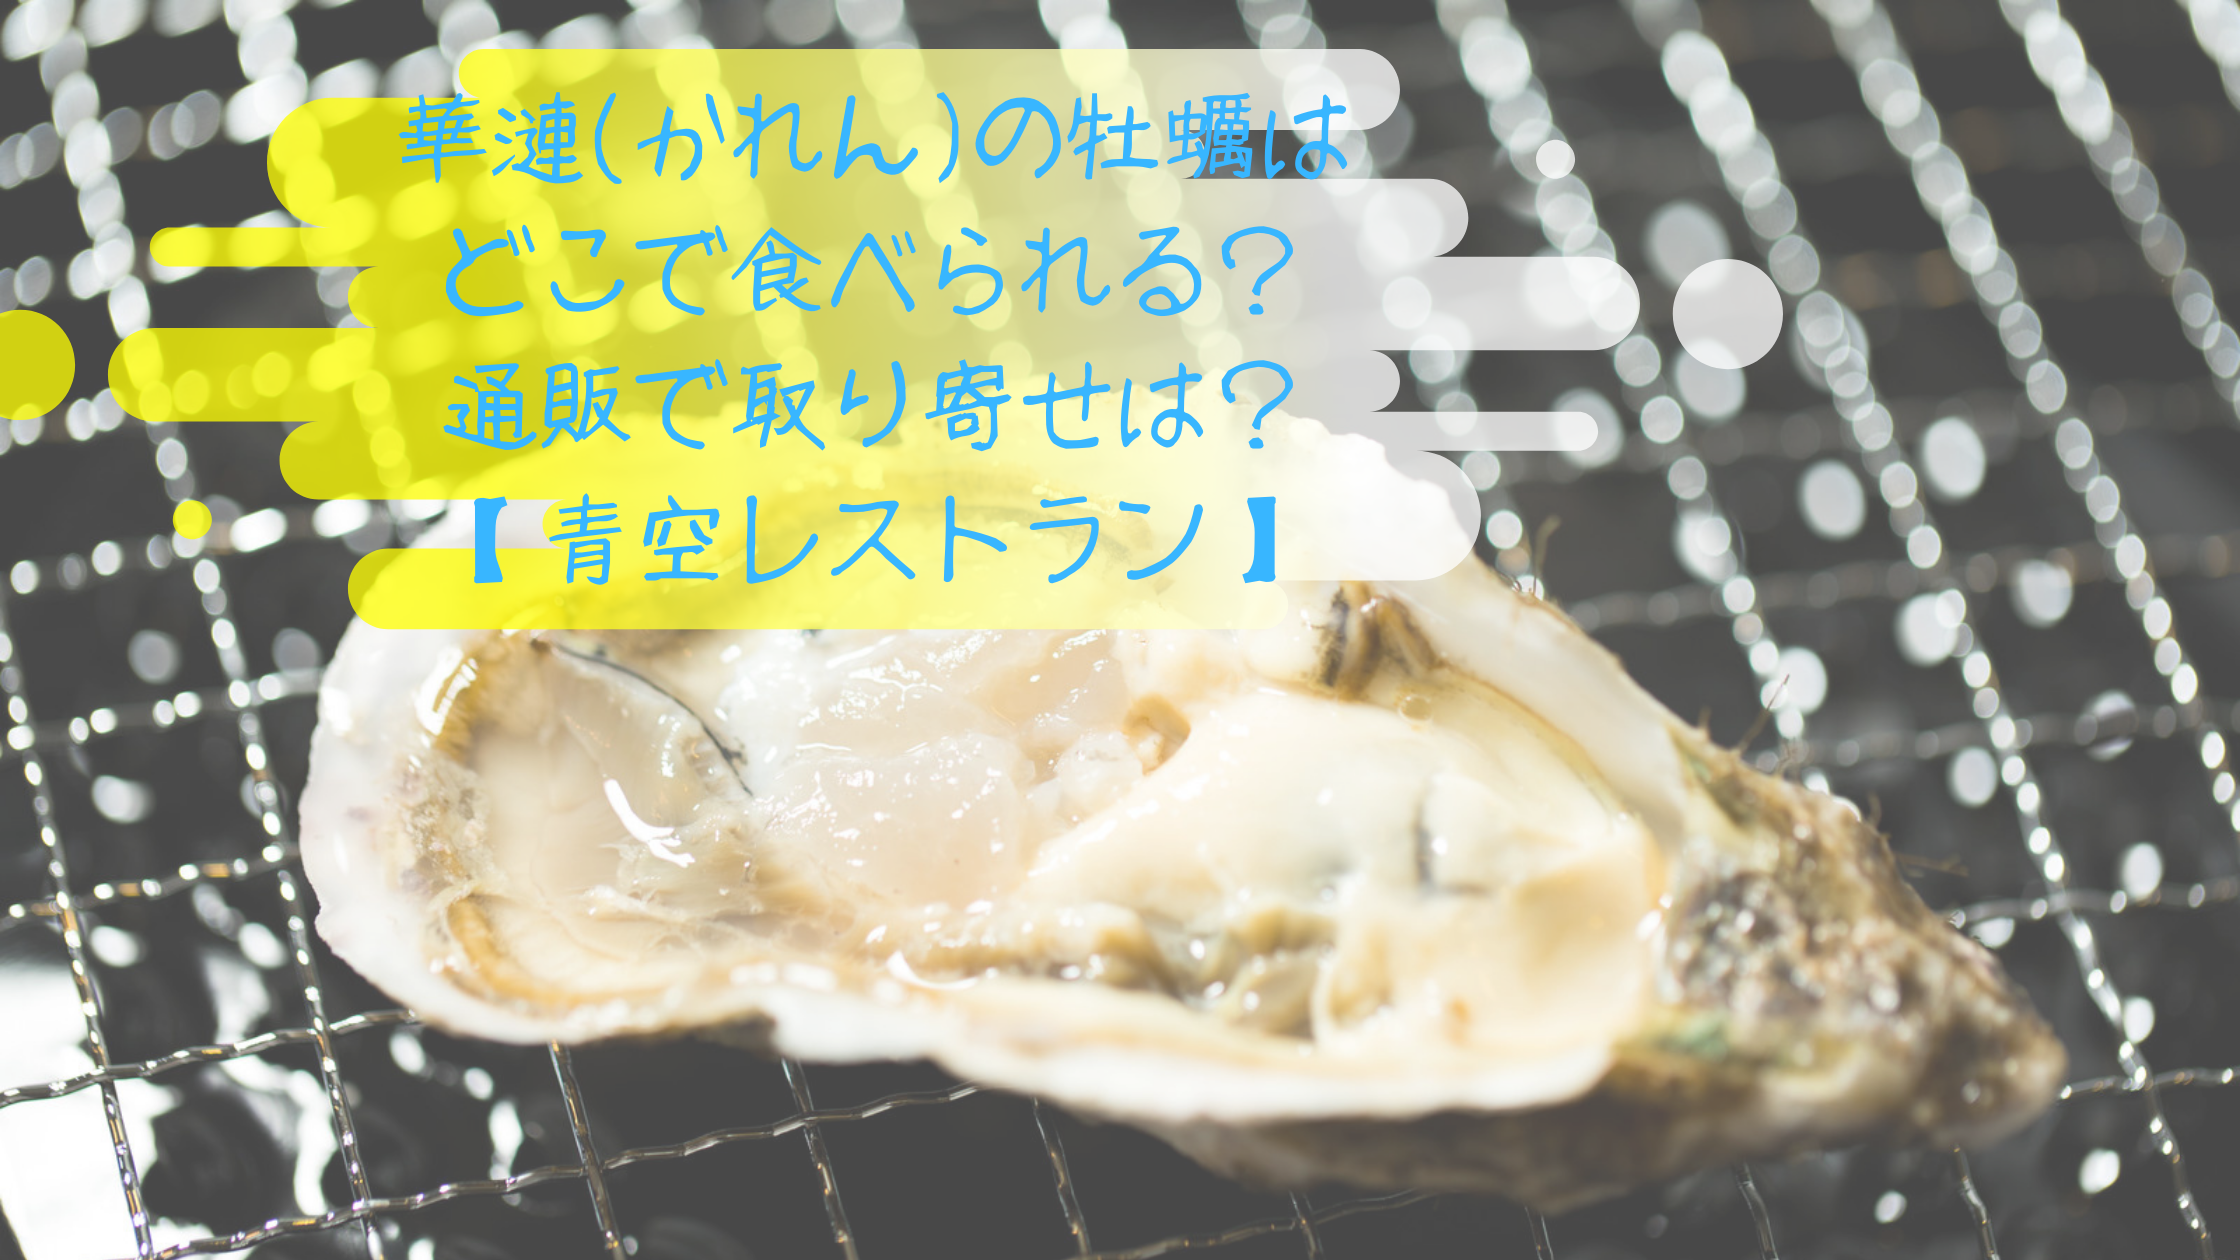 華漣 かれん の牡蠣はどこで食べられる 通販で取り寄せは 青空レストラン コーヒー片手に読むブログ